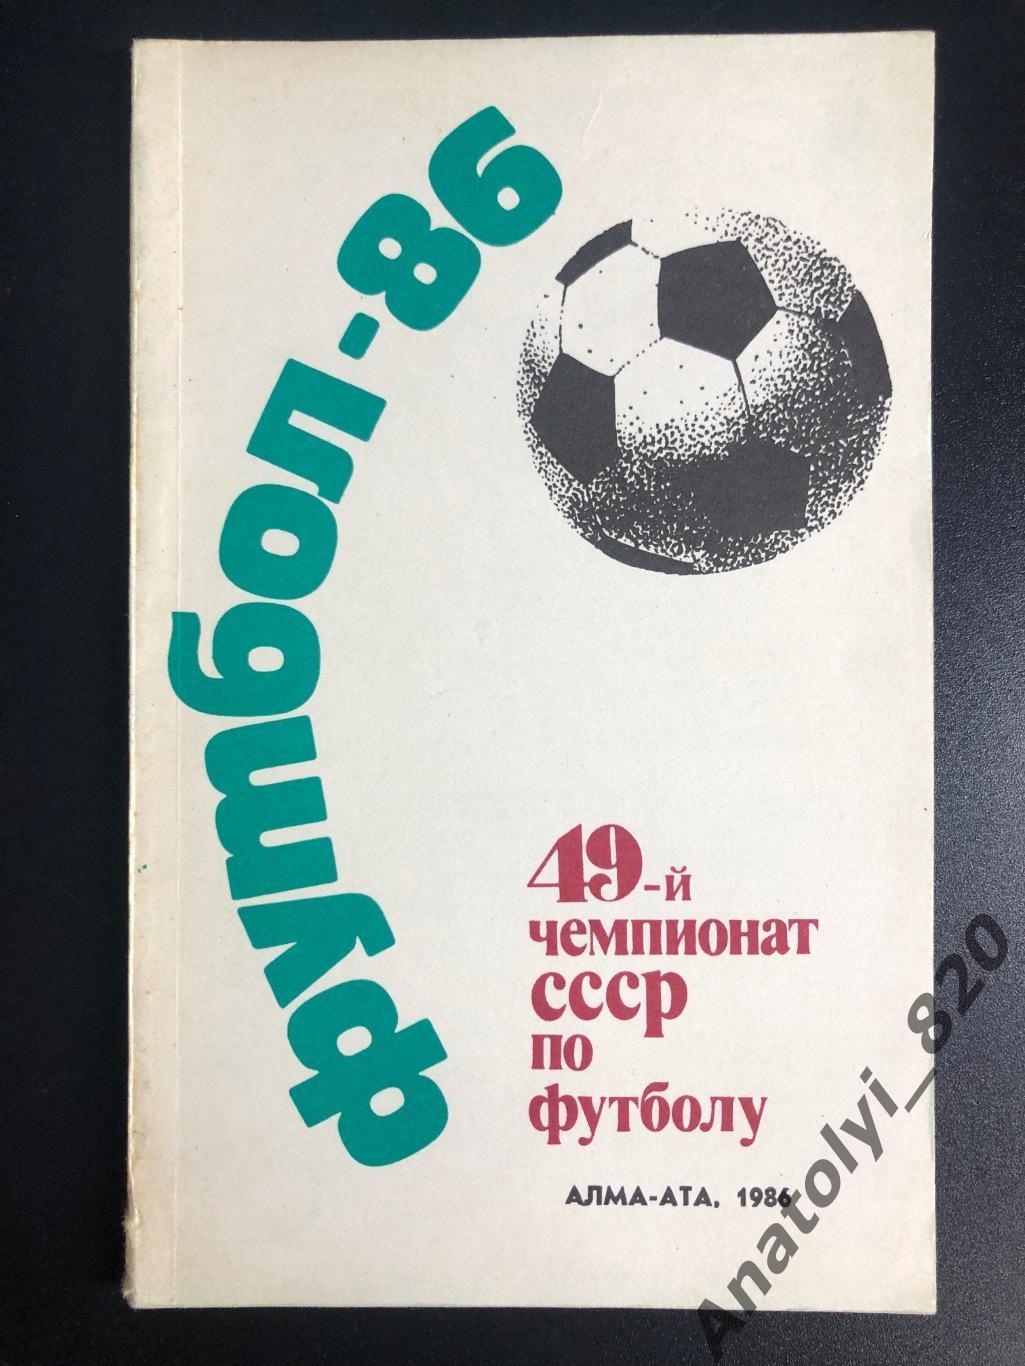 Алма-Ата 1986 год календарь - справочник